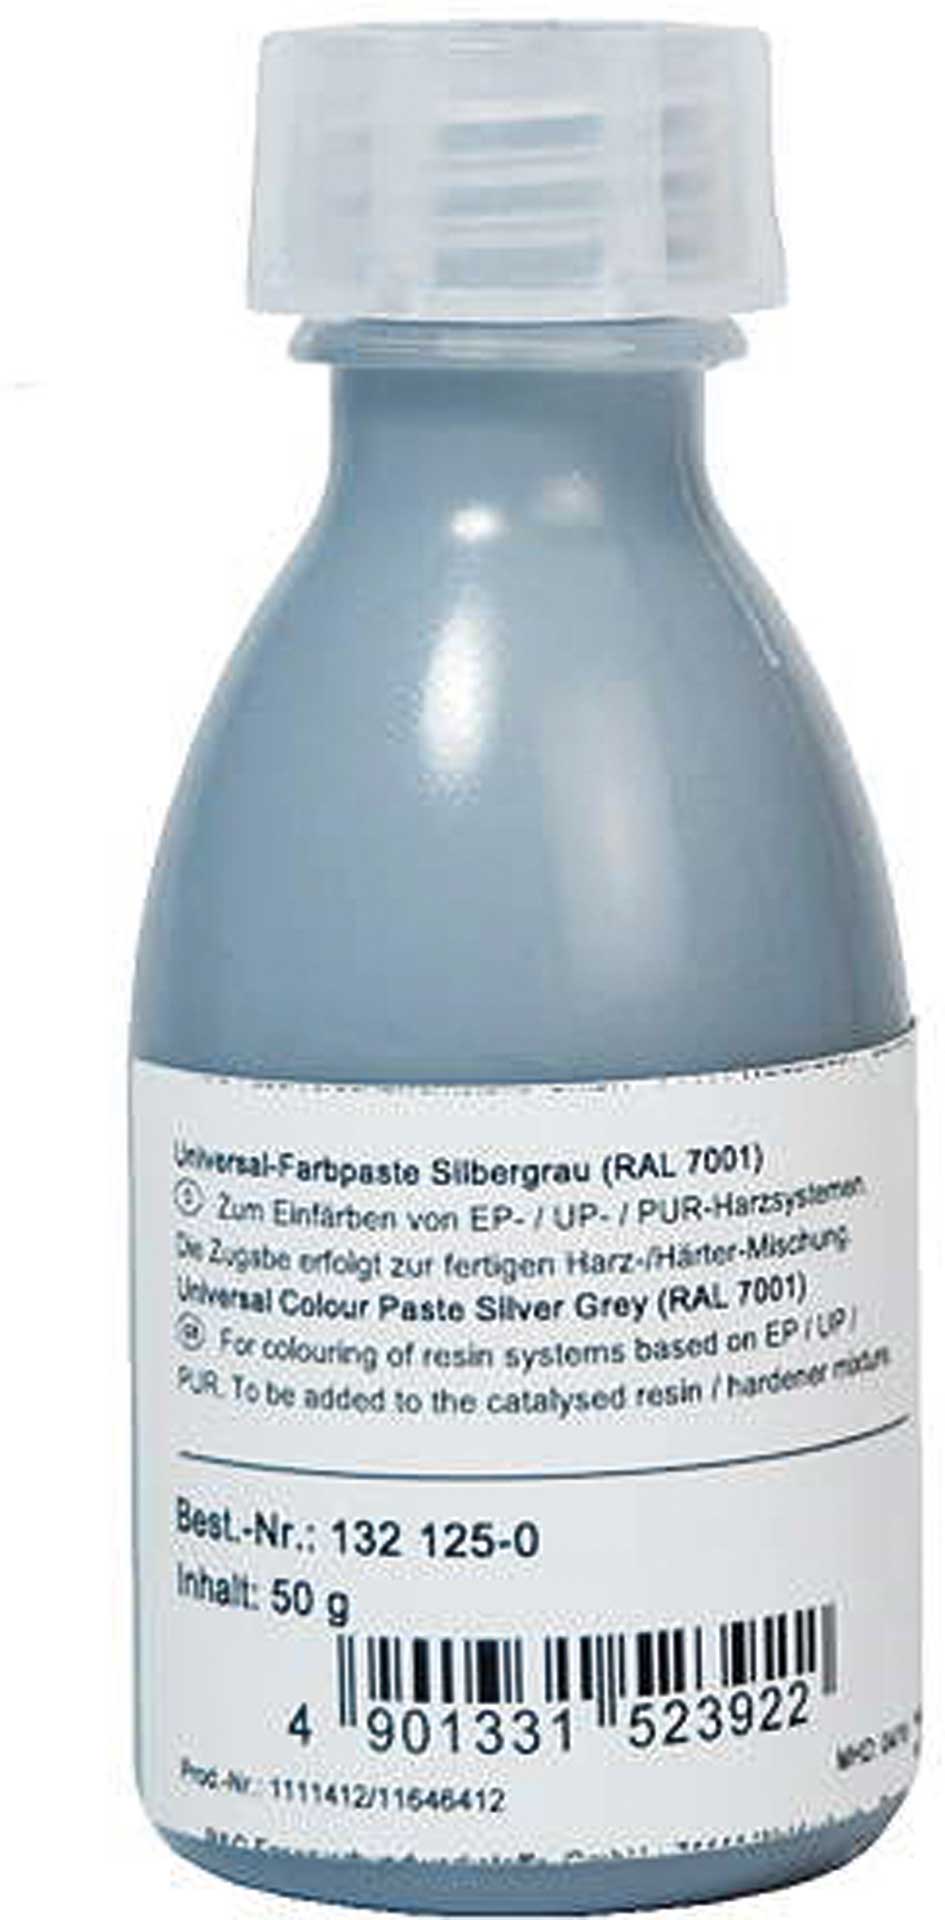 R&G Universal-Farbpaste silbergrau (RAL 7001) Flasche/ 50 g